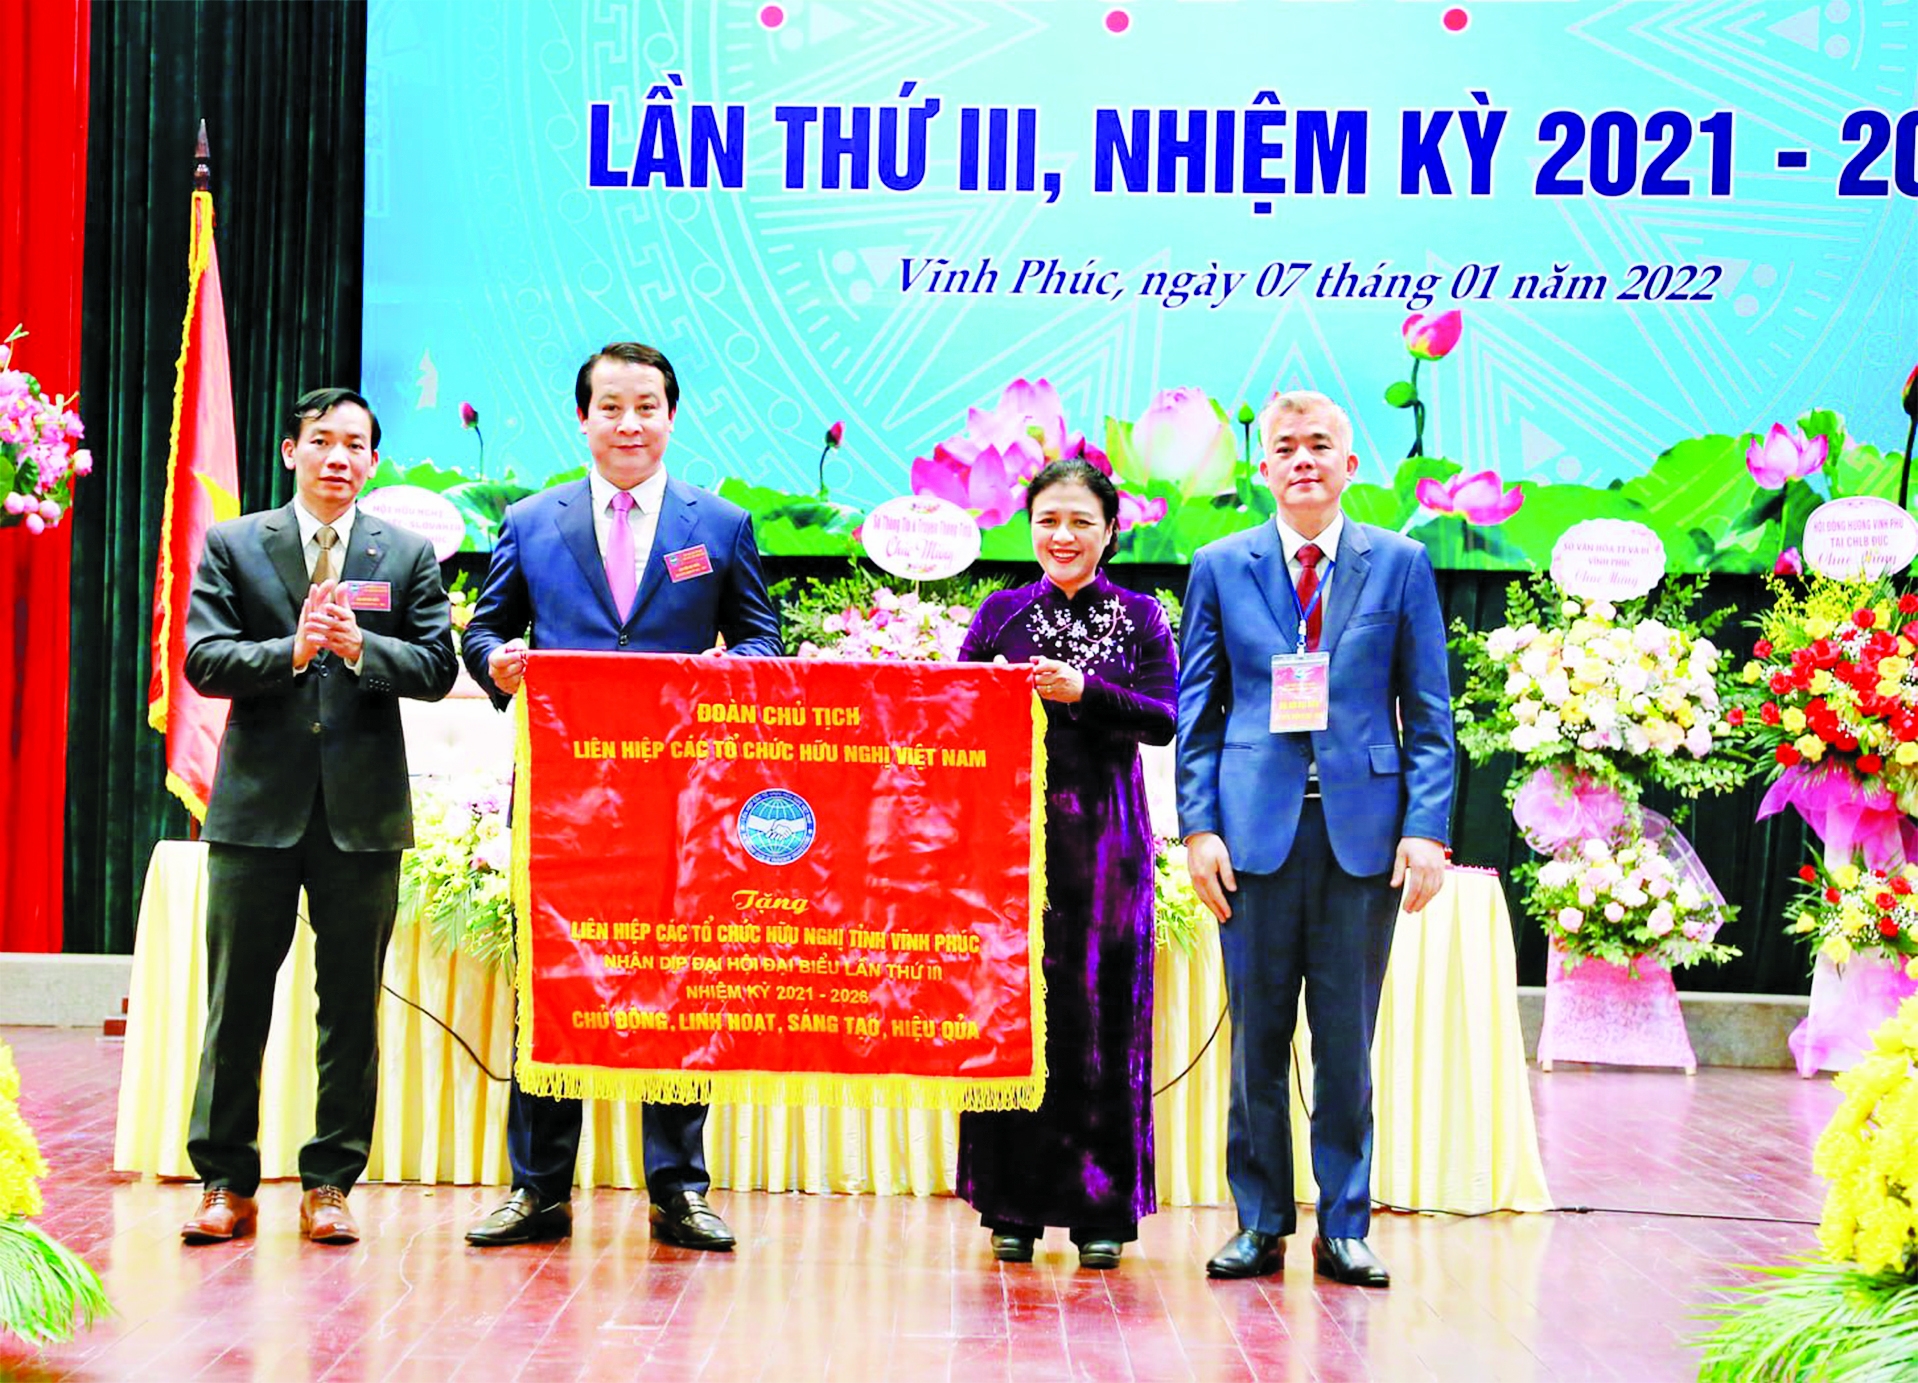 越南友好组织联合会主席阮芳娥在2021-2026年第三届代表大会上向永福省友好组织联合会赠送旗帜。图自永福省友好组织联合会